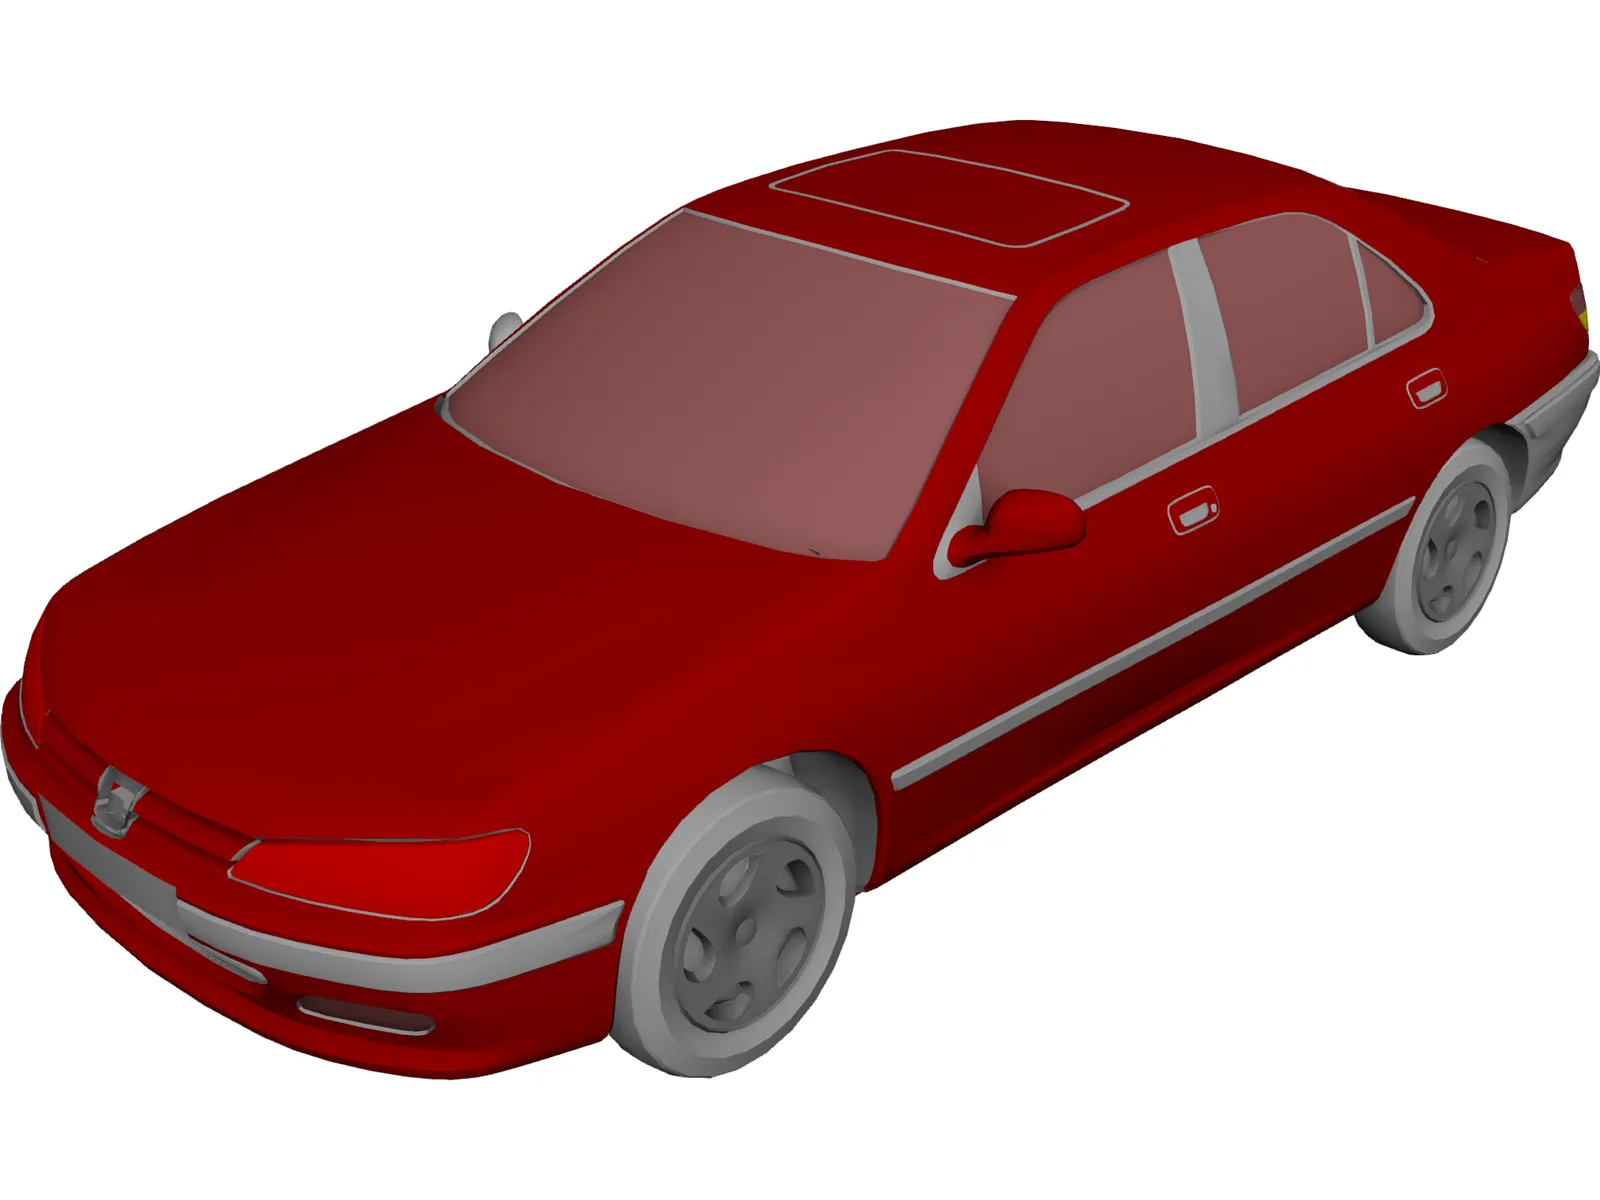 Peugeot 406 3D Model - 3DCADBrowser